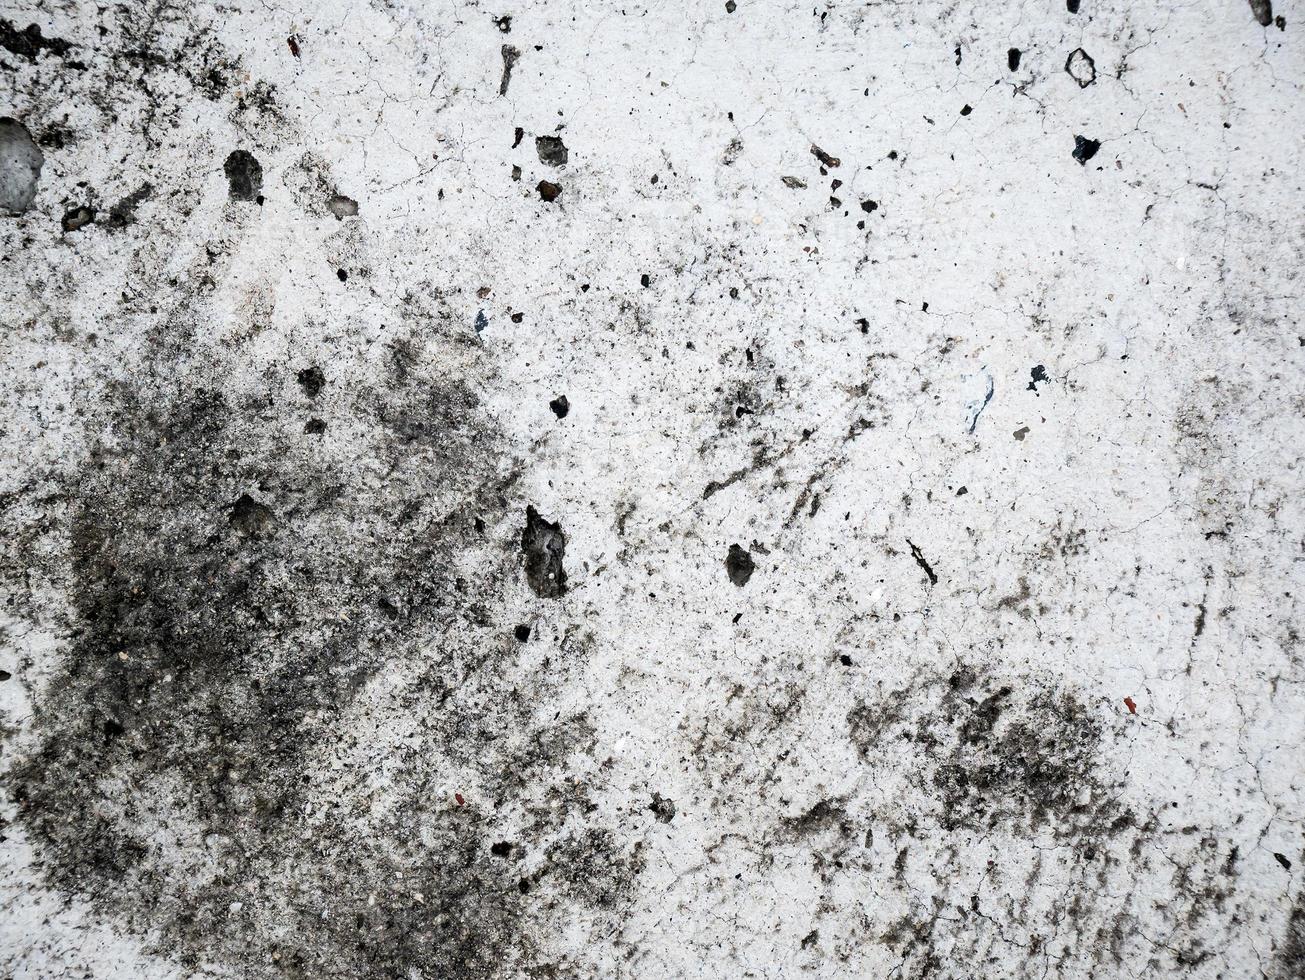 Men shoes print in concrete cement background texture photo